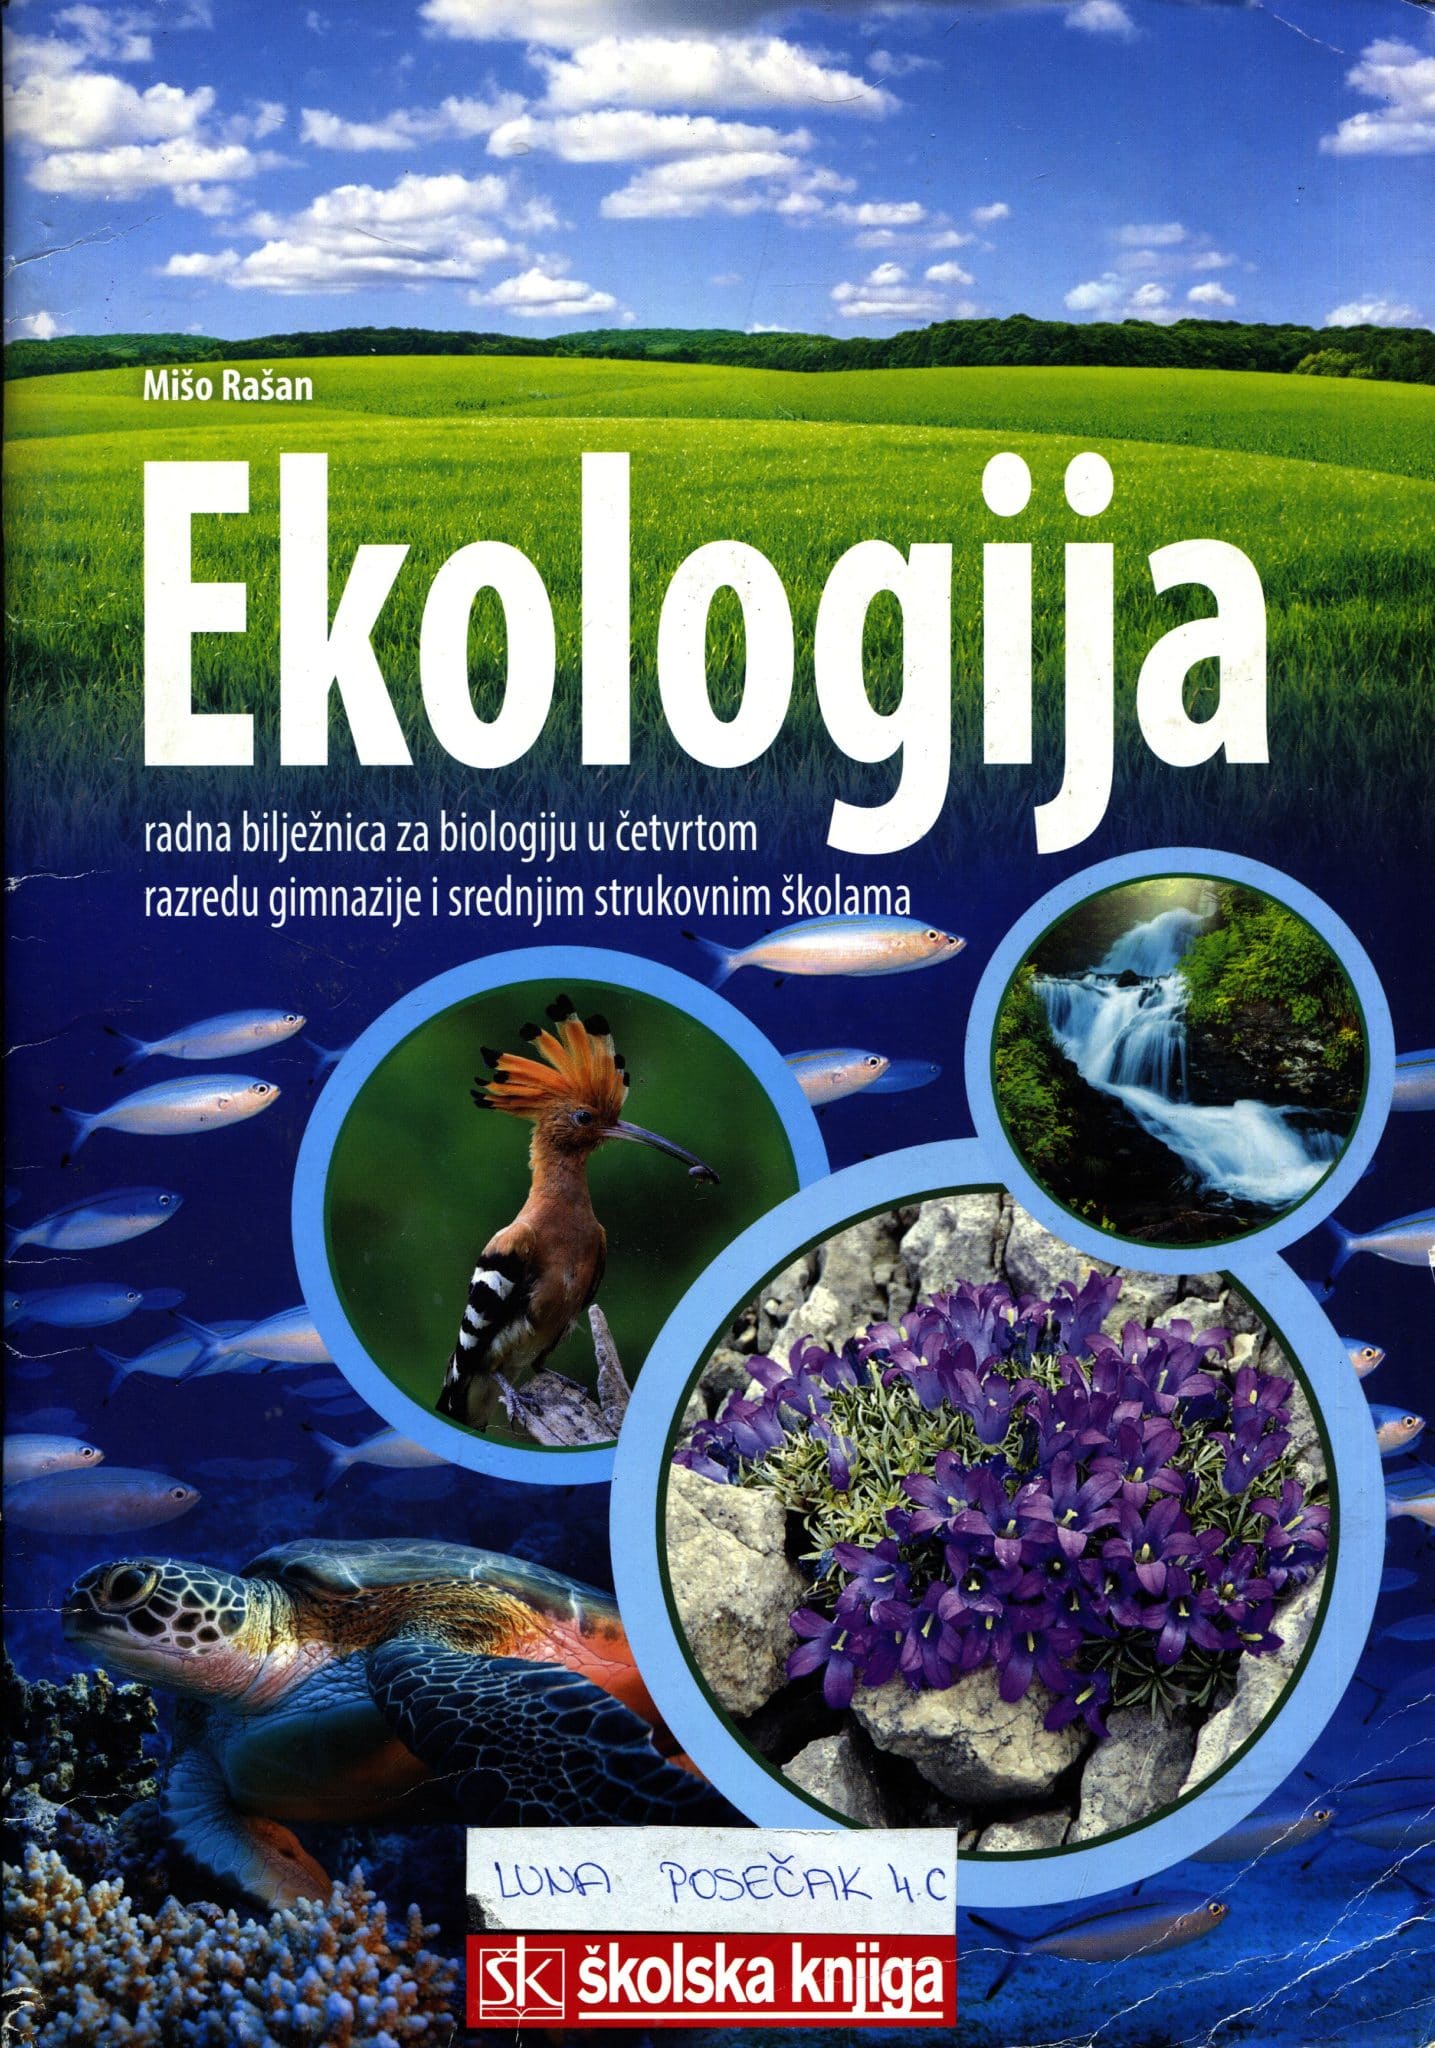 ekologija : radna bilježnica za biologiju u četvrtom razredu gimnazije i srednje strukovne škole autora Mišo Rašan